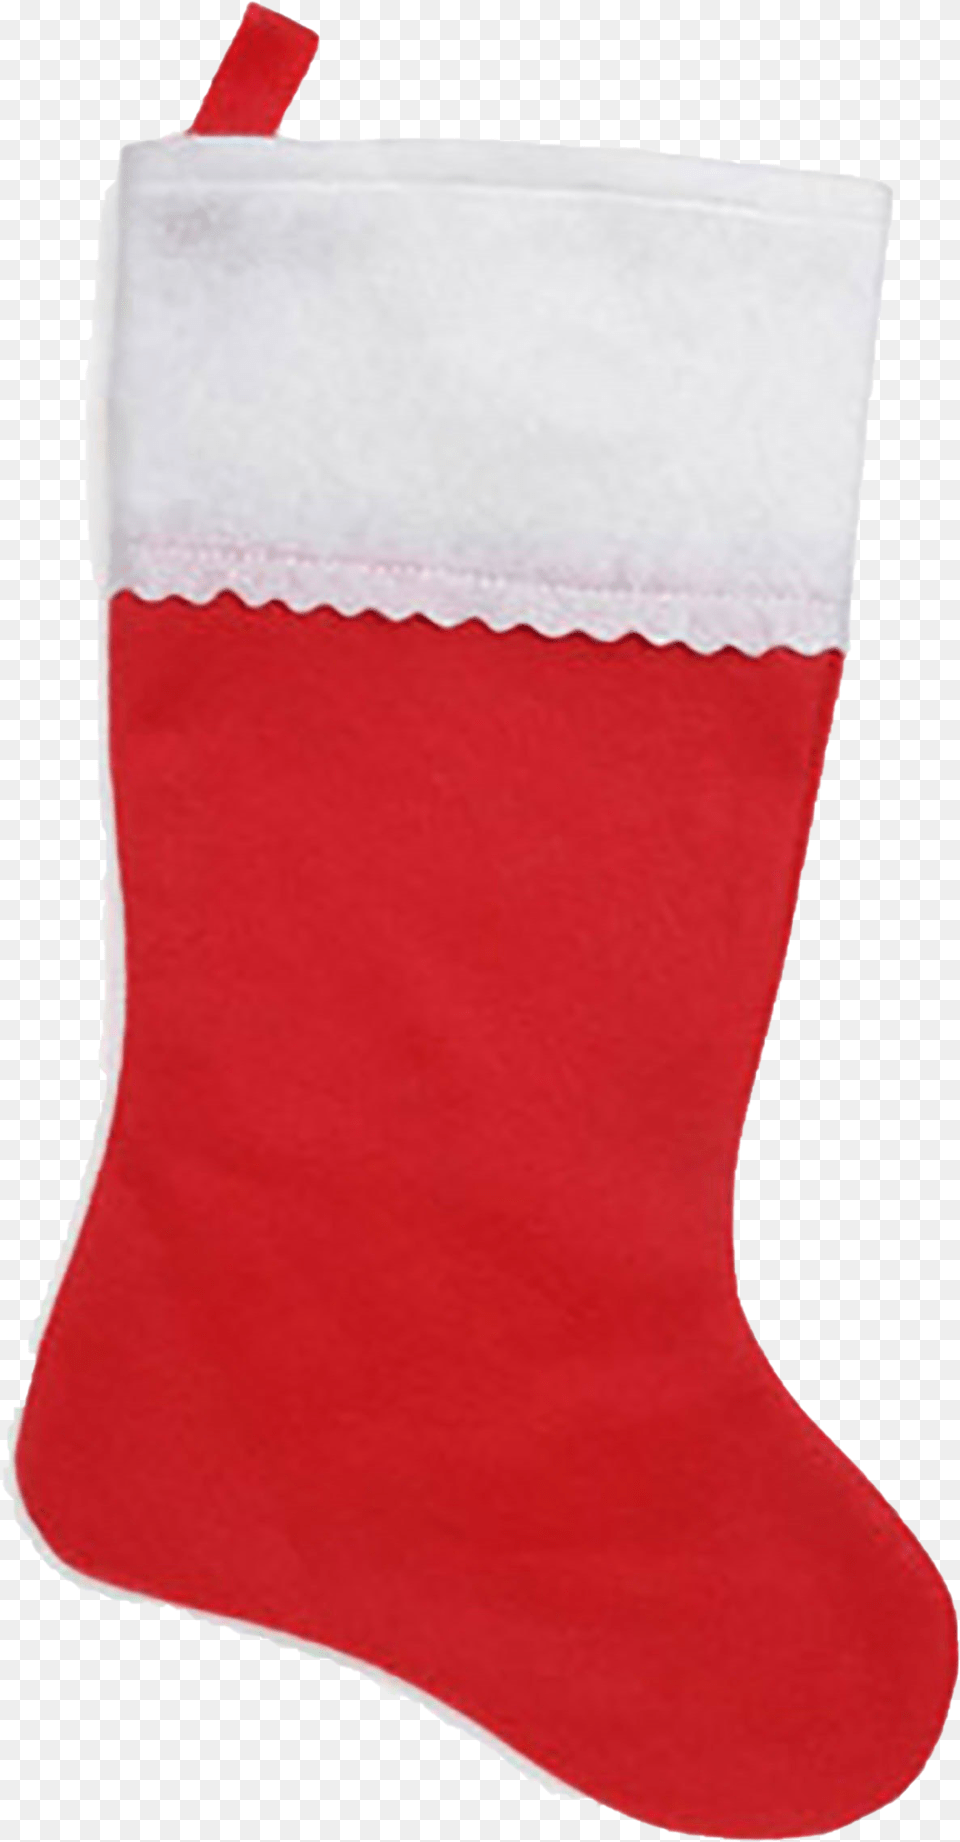 Christmas Stockings Christmas Stocking, Clothing, Hosiery, Christmas Decorations, Christmas Stocking Png Image